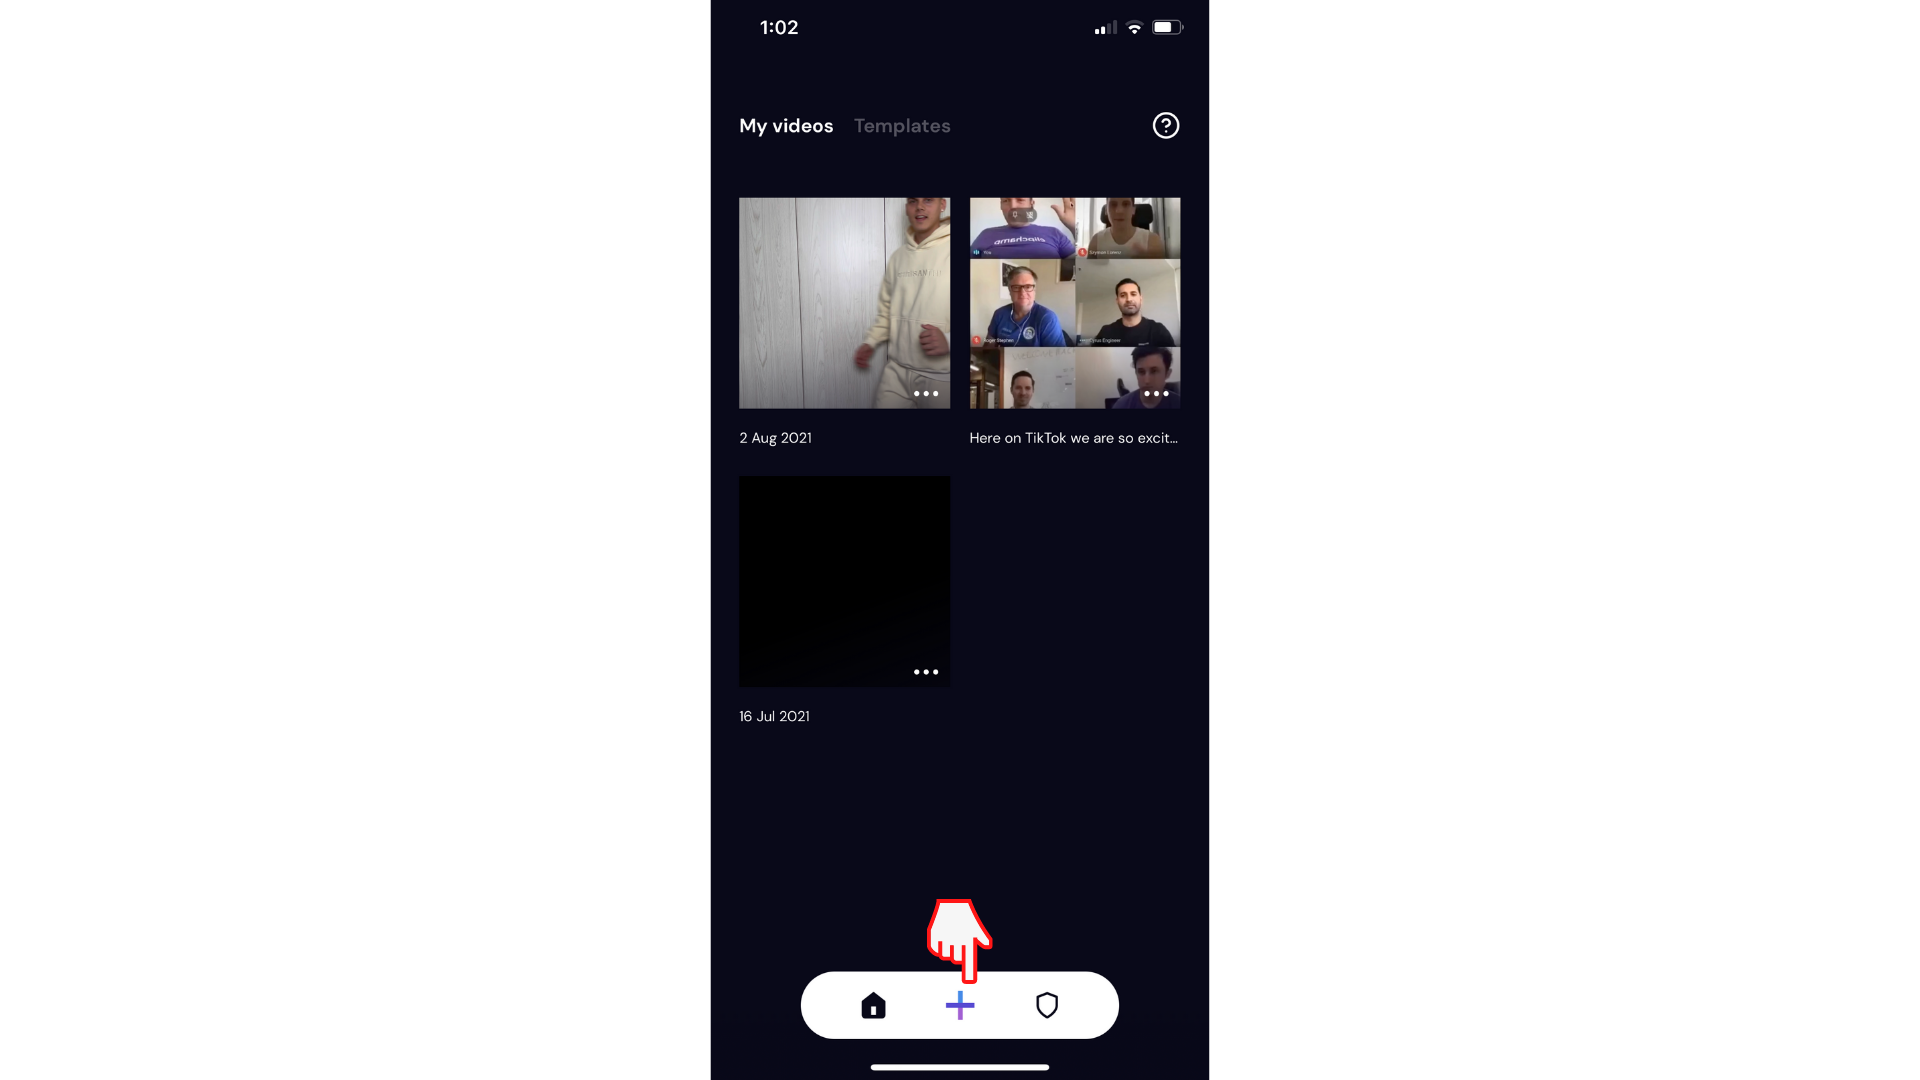 Clipchamp iOS uygulamasında artı düğmesine tıklayarak yeni video oluşturan kullanıcı